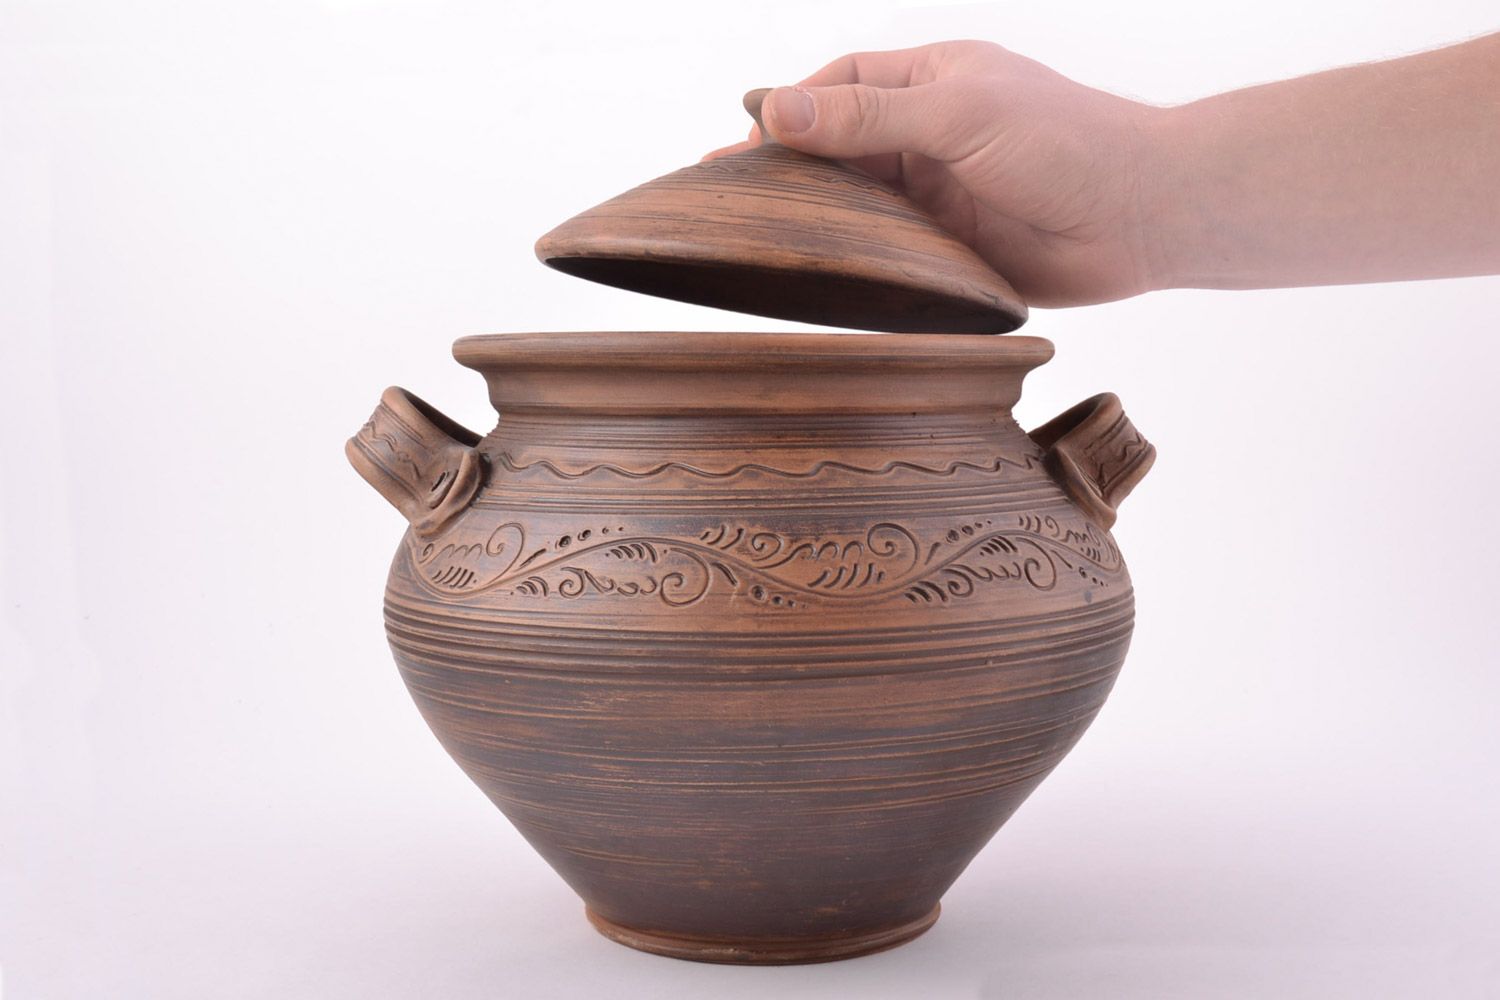 Großer handmade Keramik Topf mit Deckel Handarbeit 4 l in Braun für Backen  foto 2